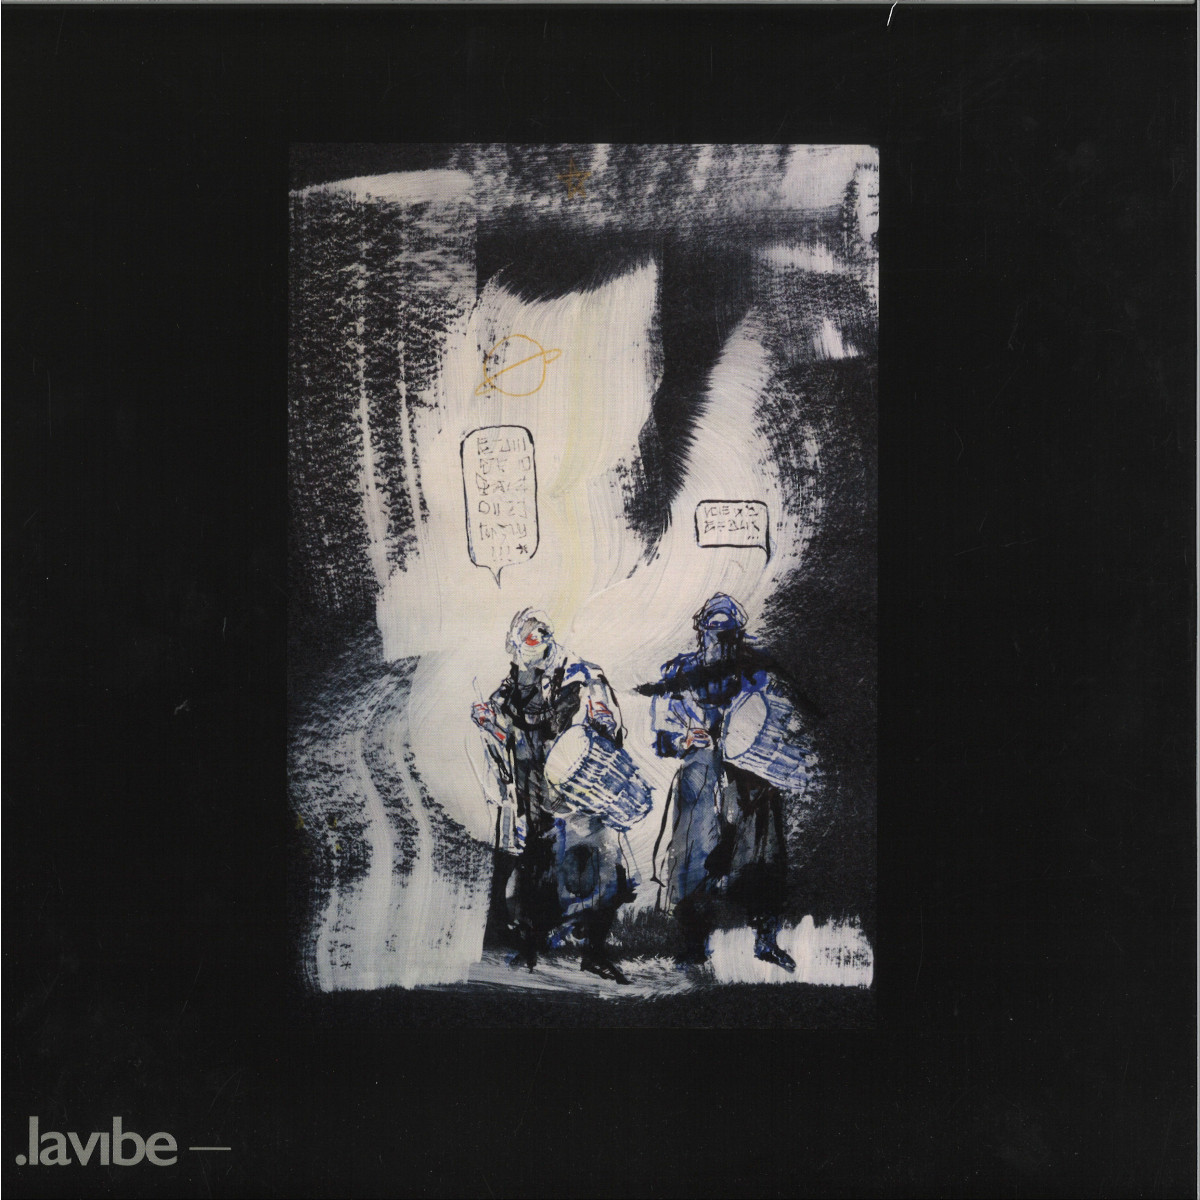 NSDOS, Patrick Russell - Sans Titre EP 03 / Lavibe LAVIBE004 - Vinyl